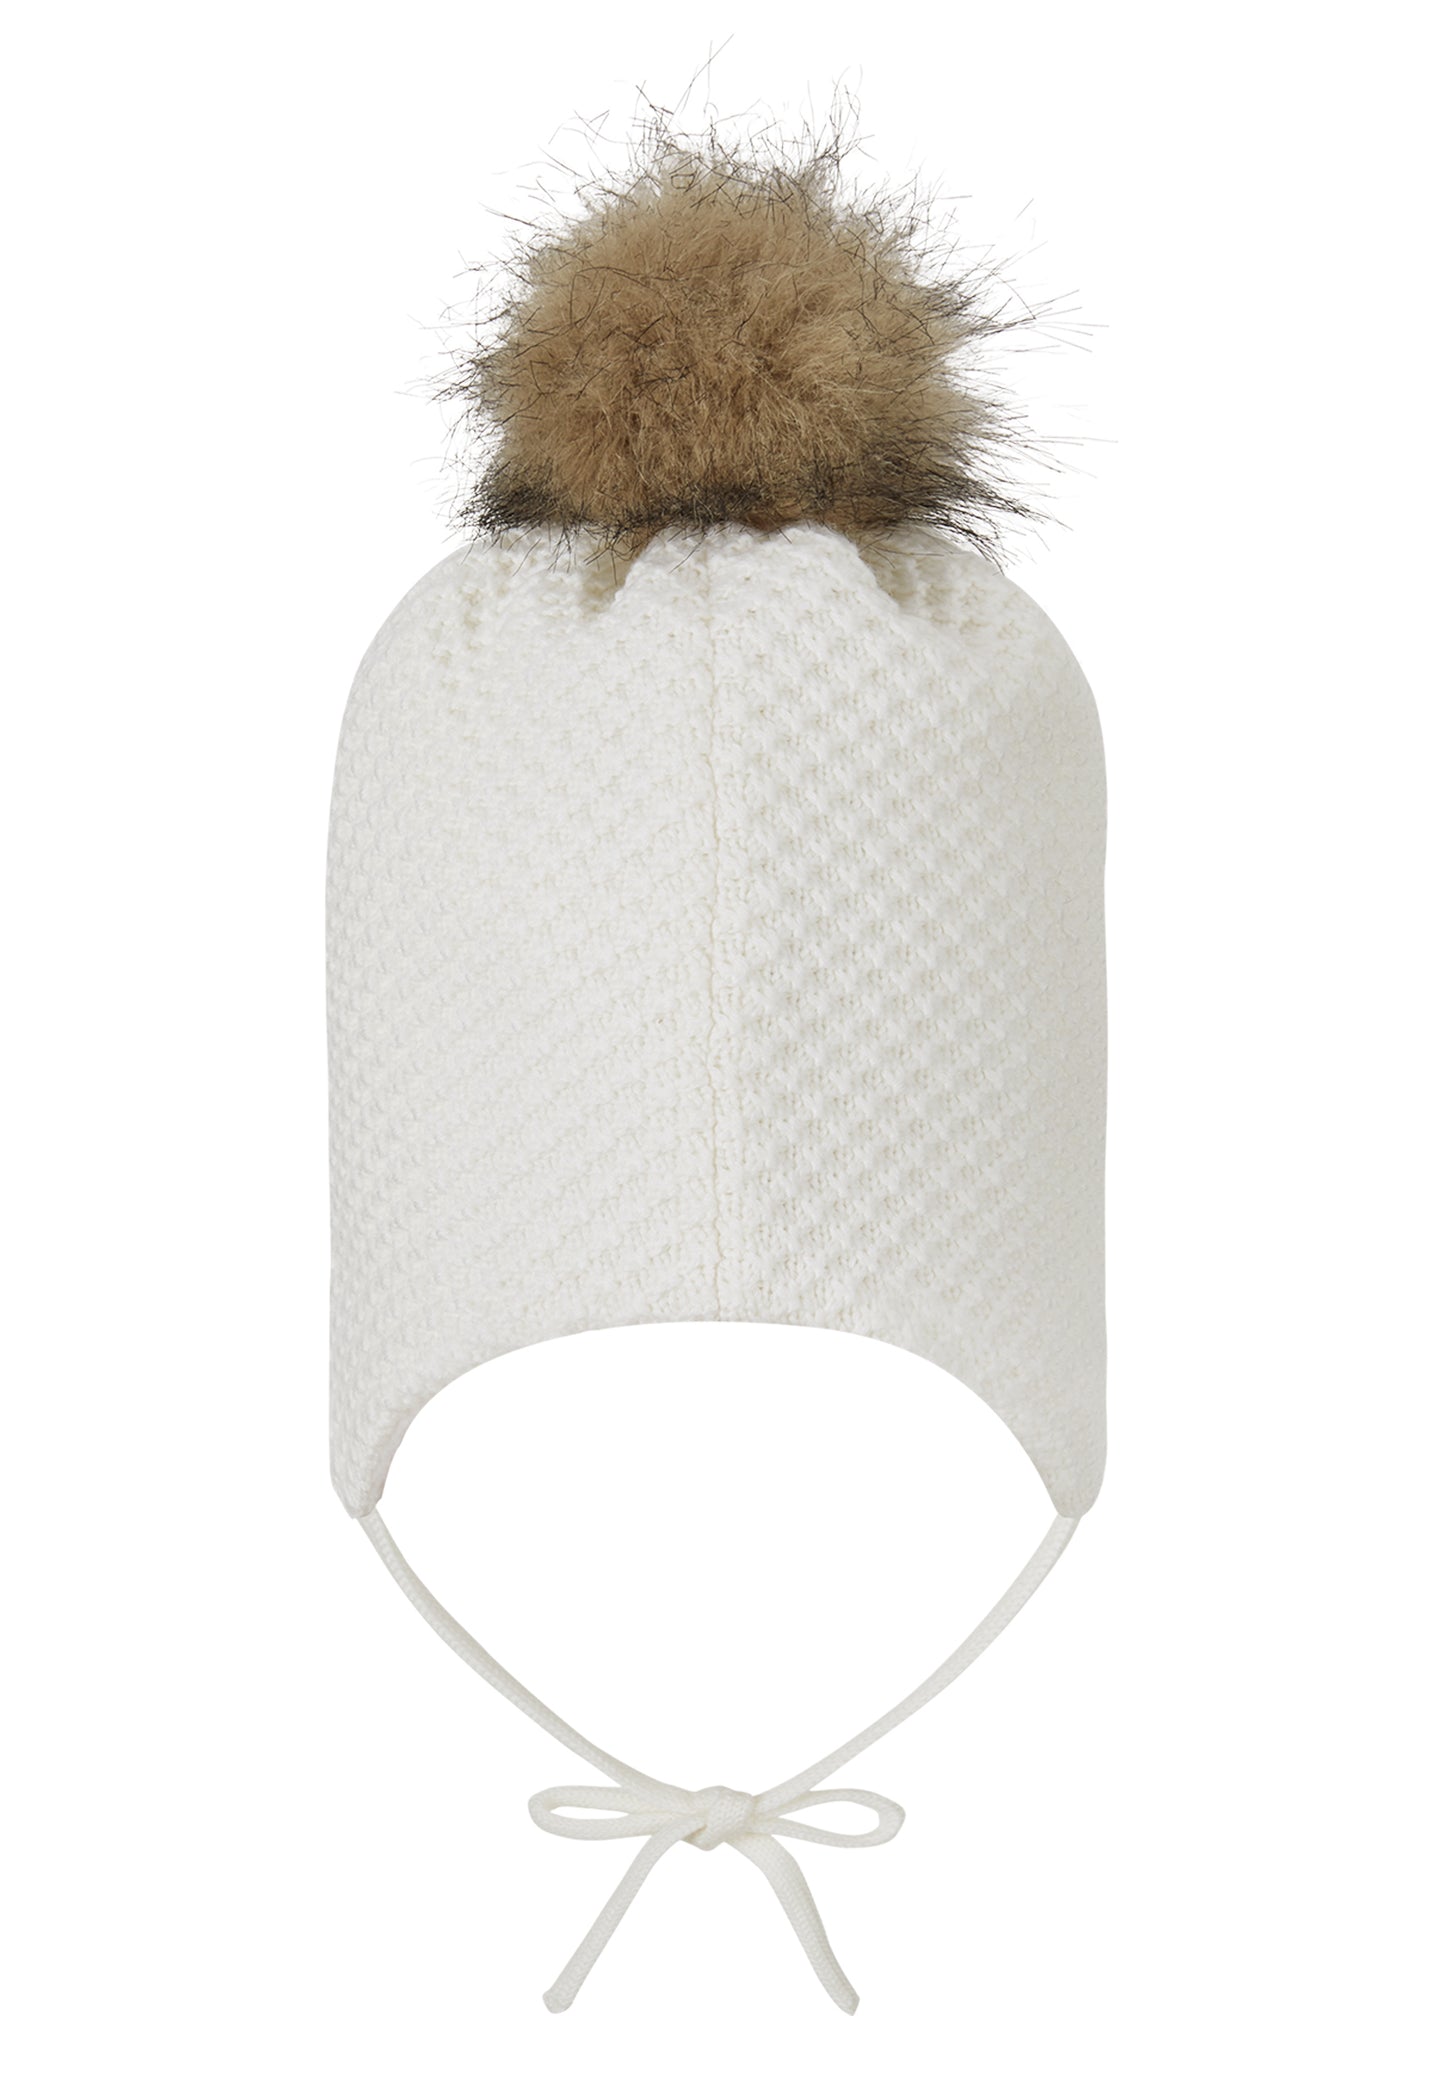 Reima Mütze mit Bändel <br>Murmeli <br>Gr. 46, 48, 50, 52 <br>innen hautfreundliches Fleece<br> aussen warme, wasserabweisende Merino-Wolle<br> Windstopper-Membrane im Ohrbereich